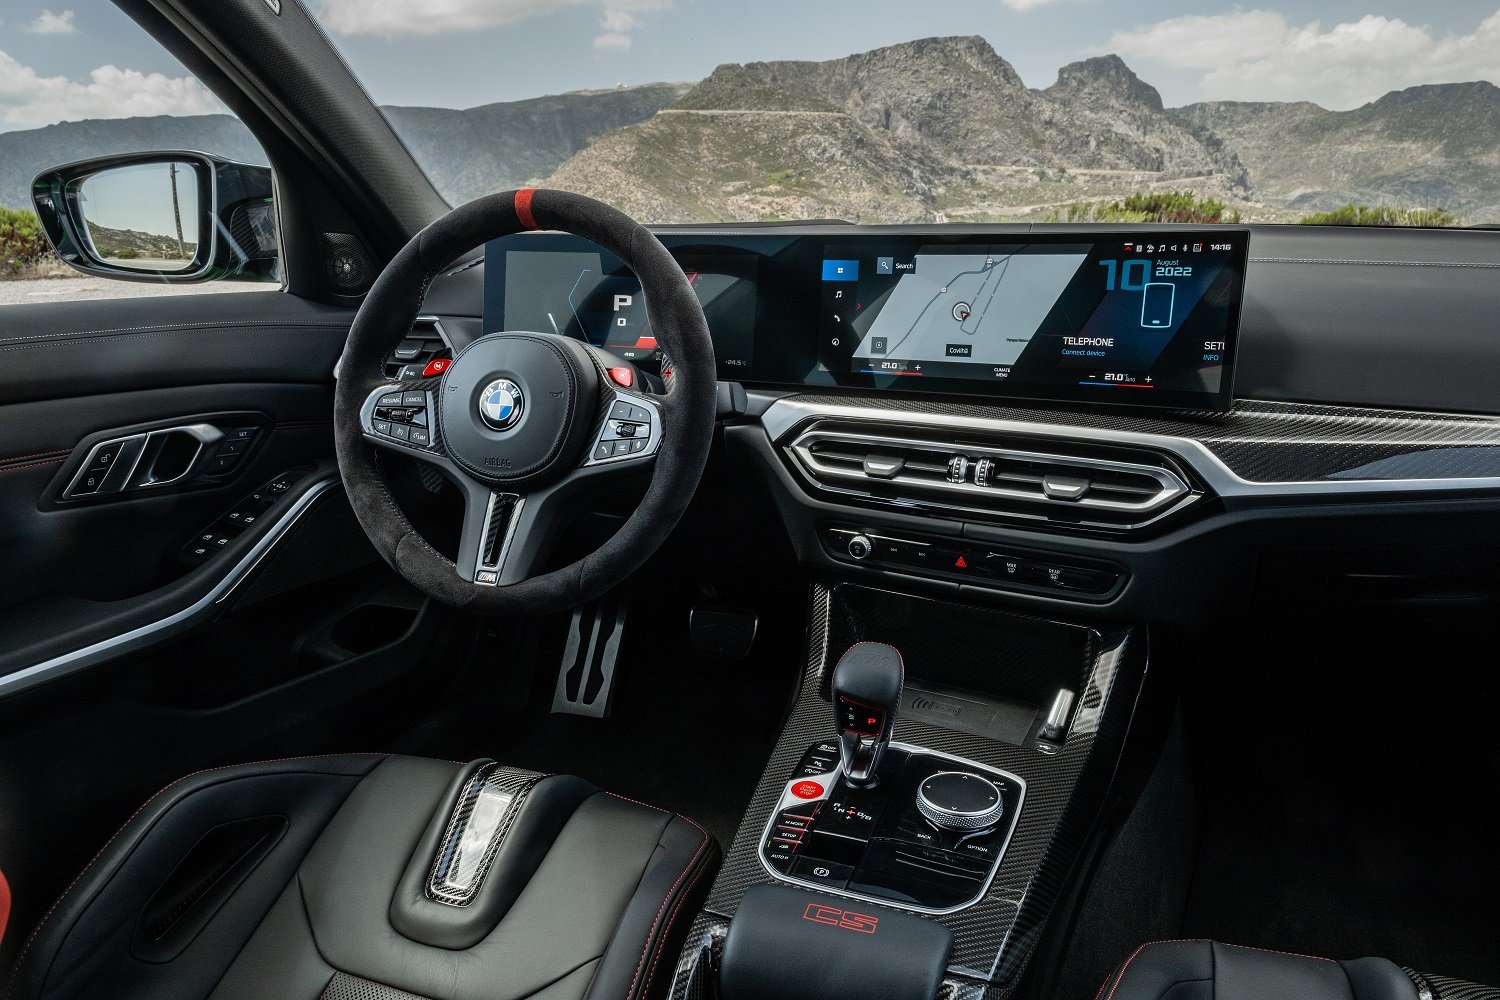 BMW M3 CS revealed